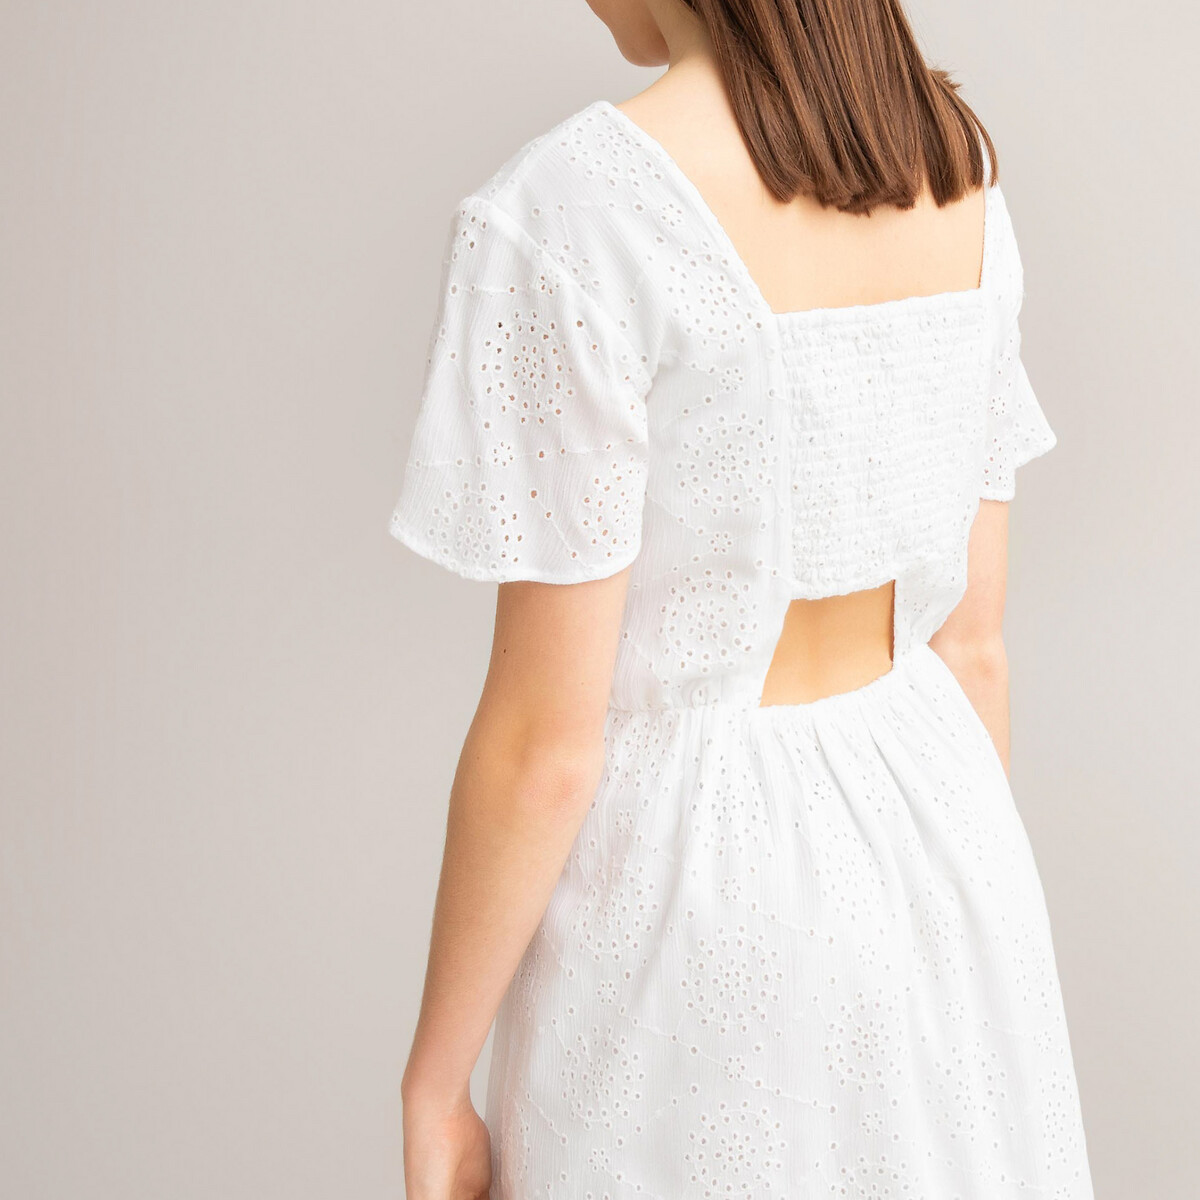 Платье LaRedoute Струящееся из английской вышивкой 10-18 лет 18 лет - 168 см белый, размер 18 лет - 168 см - фото 2